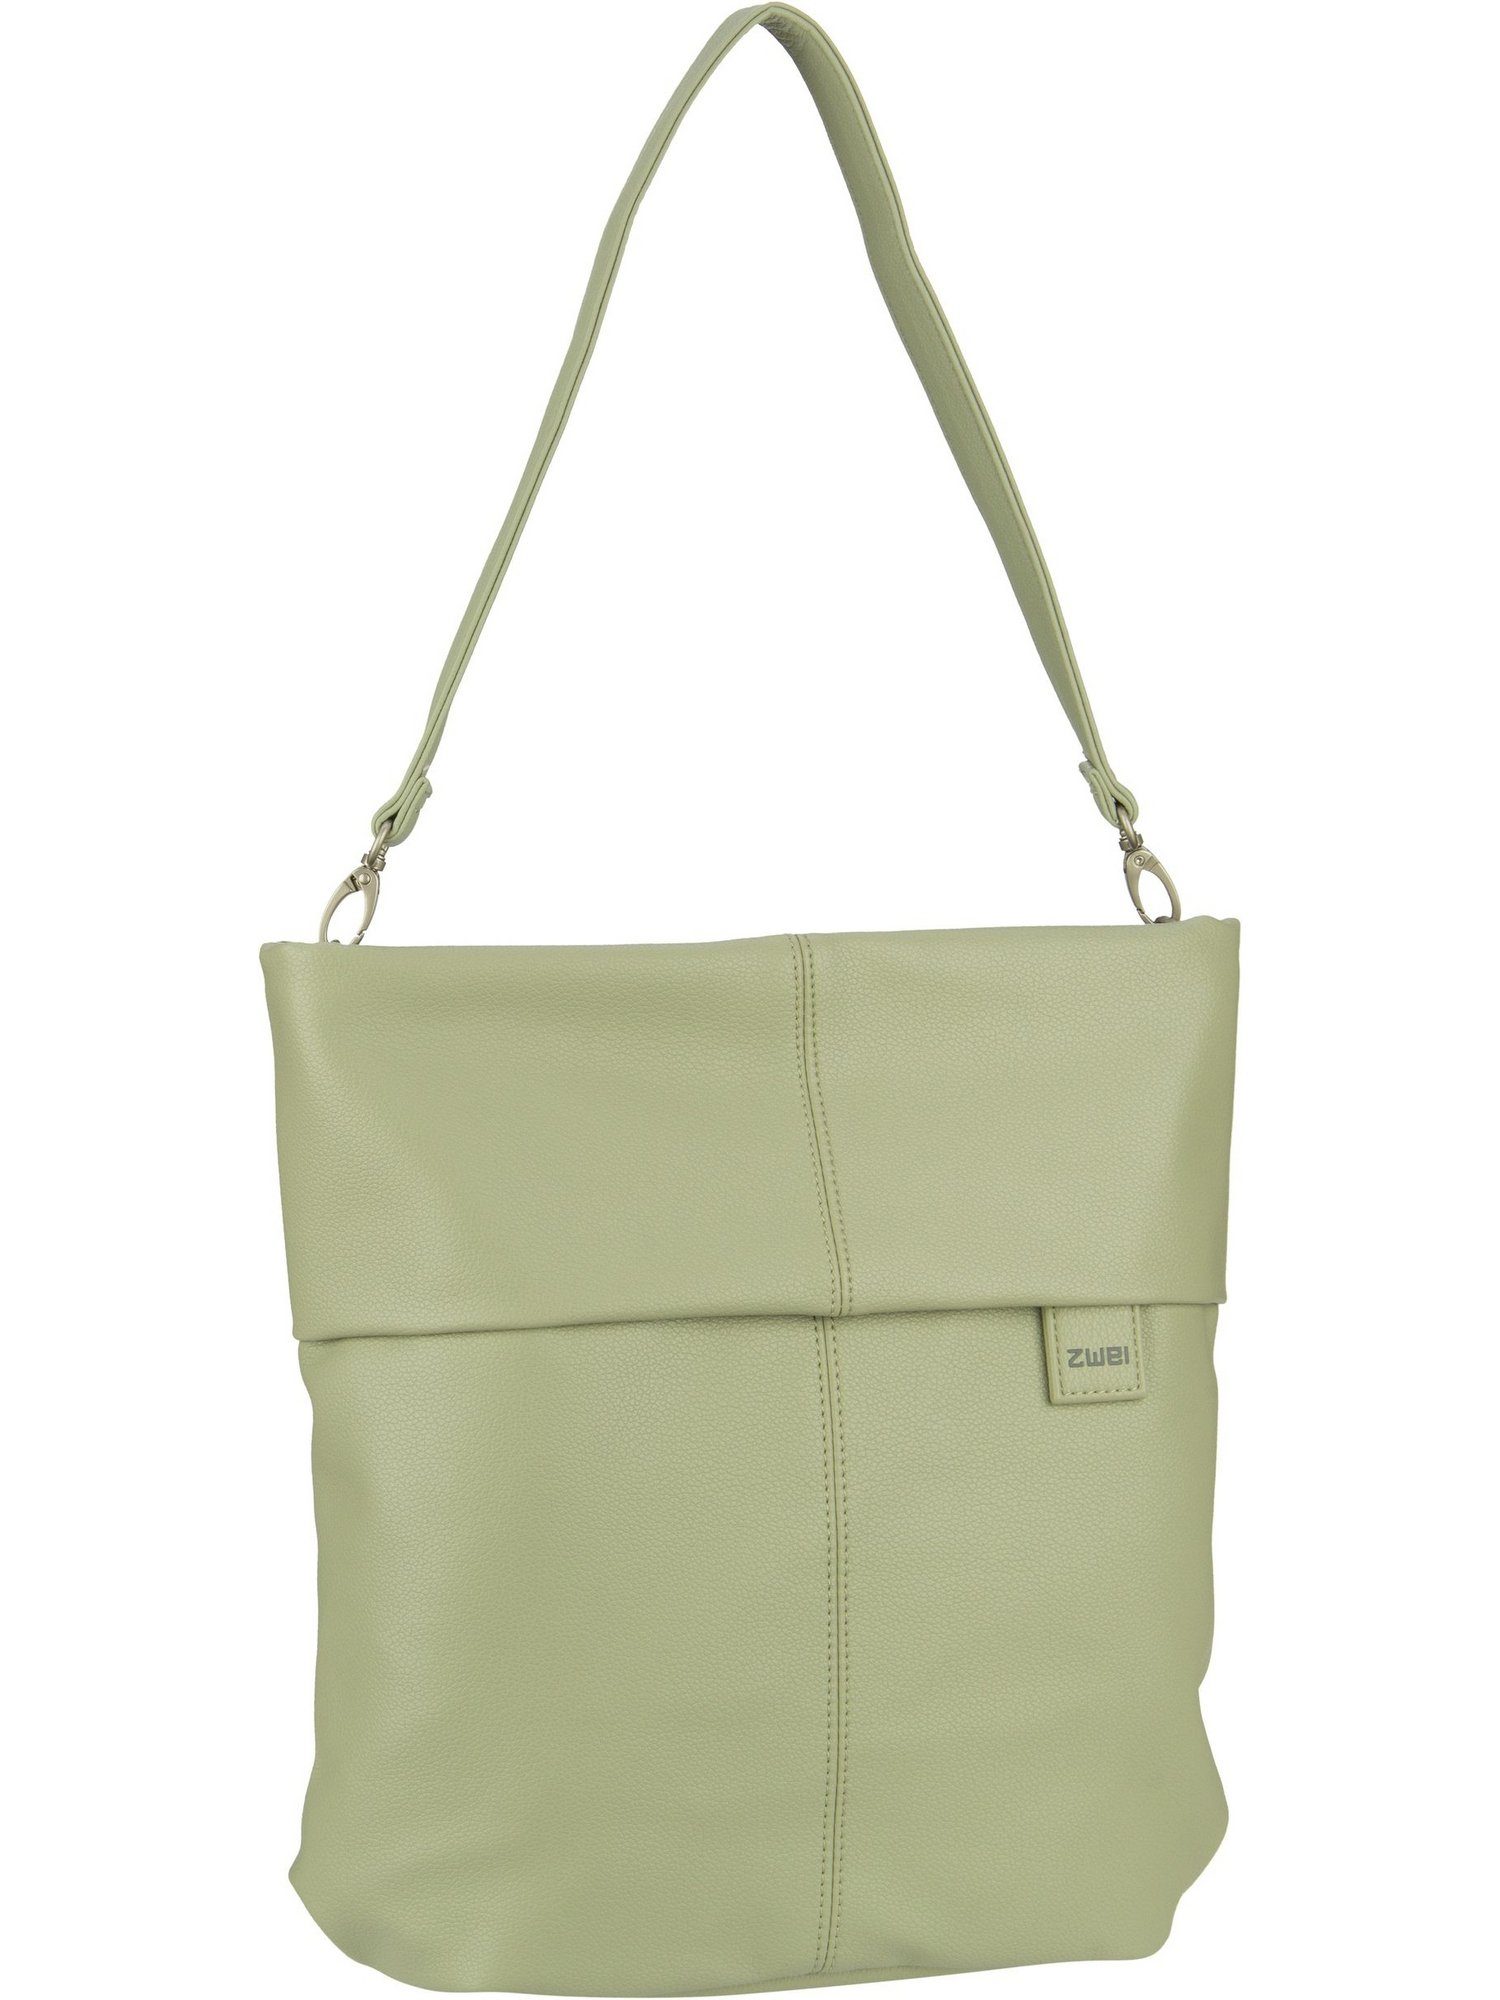 Zwei Handtasche Mademoiselle M12, Hobo Bag Jade